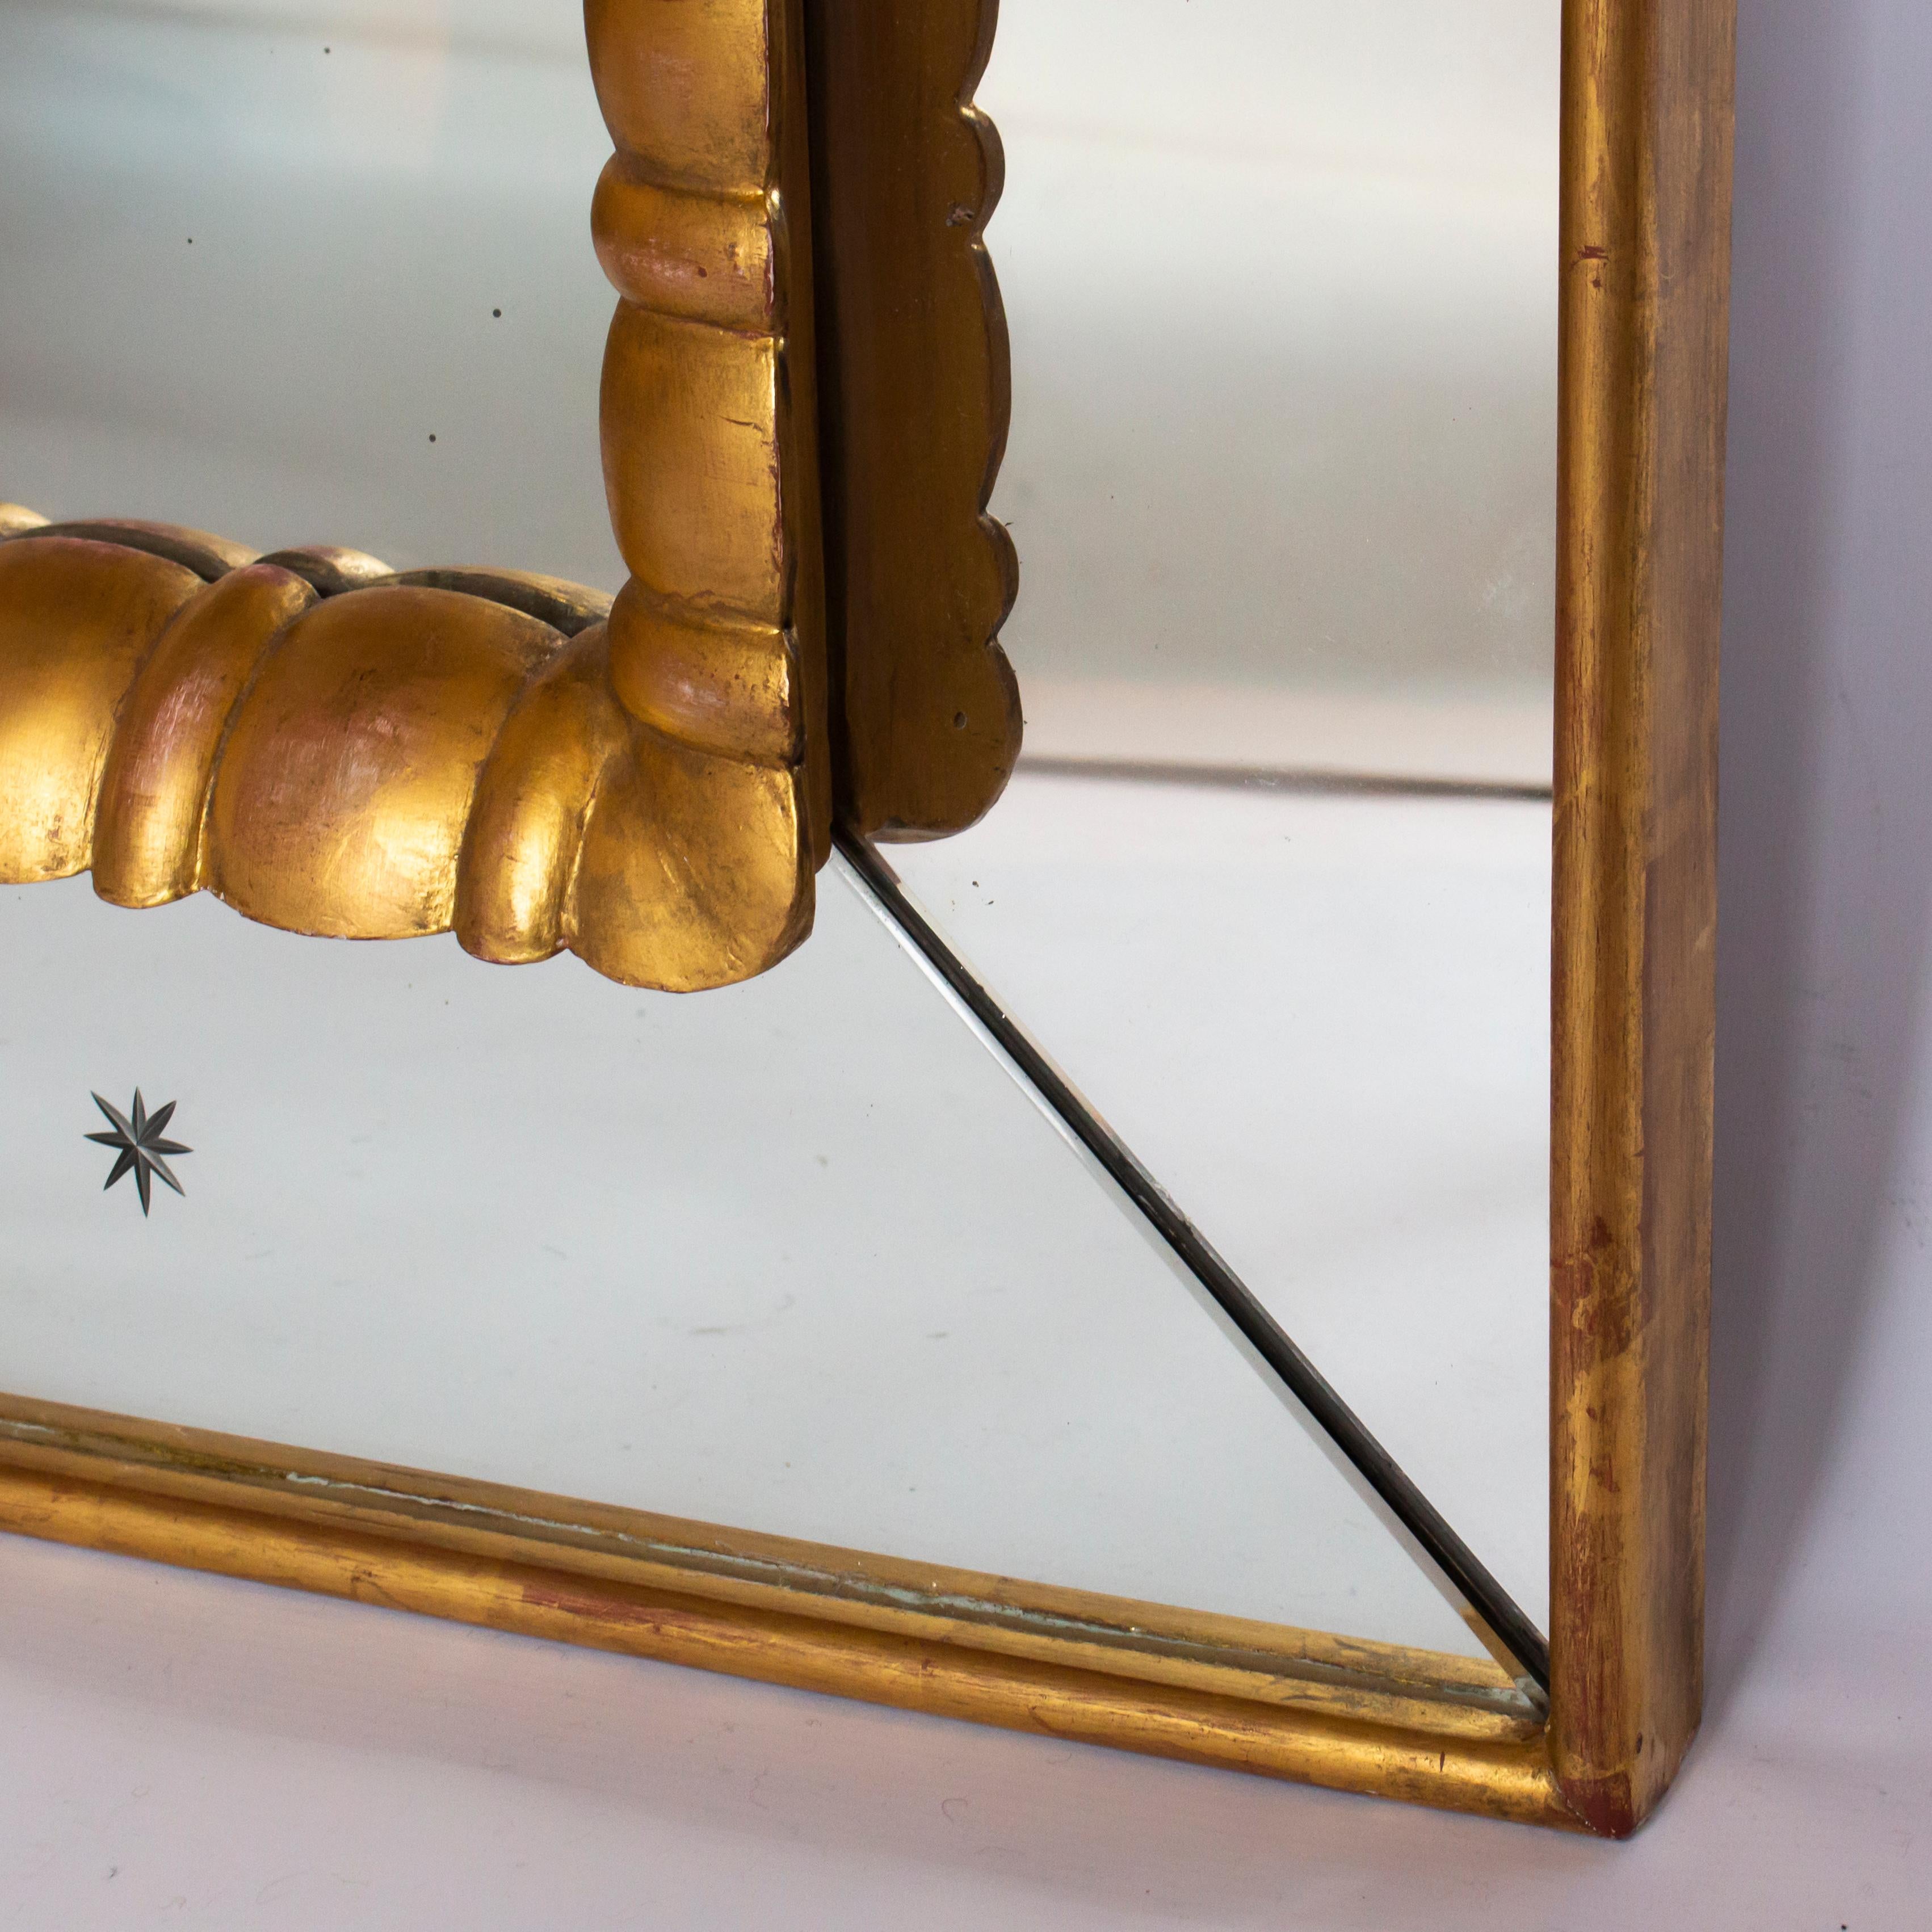 miroir italien des années 1950 avec cadre en bois doré et cadre intérieur en bois doré sculpté. Peut être suspendu horizontalement ou verticalement,
vers 1950.